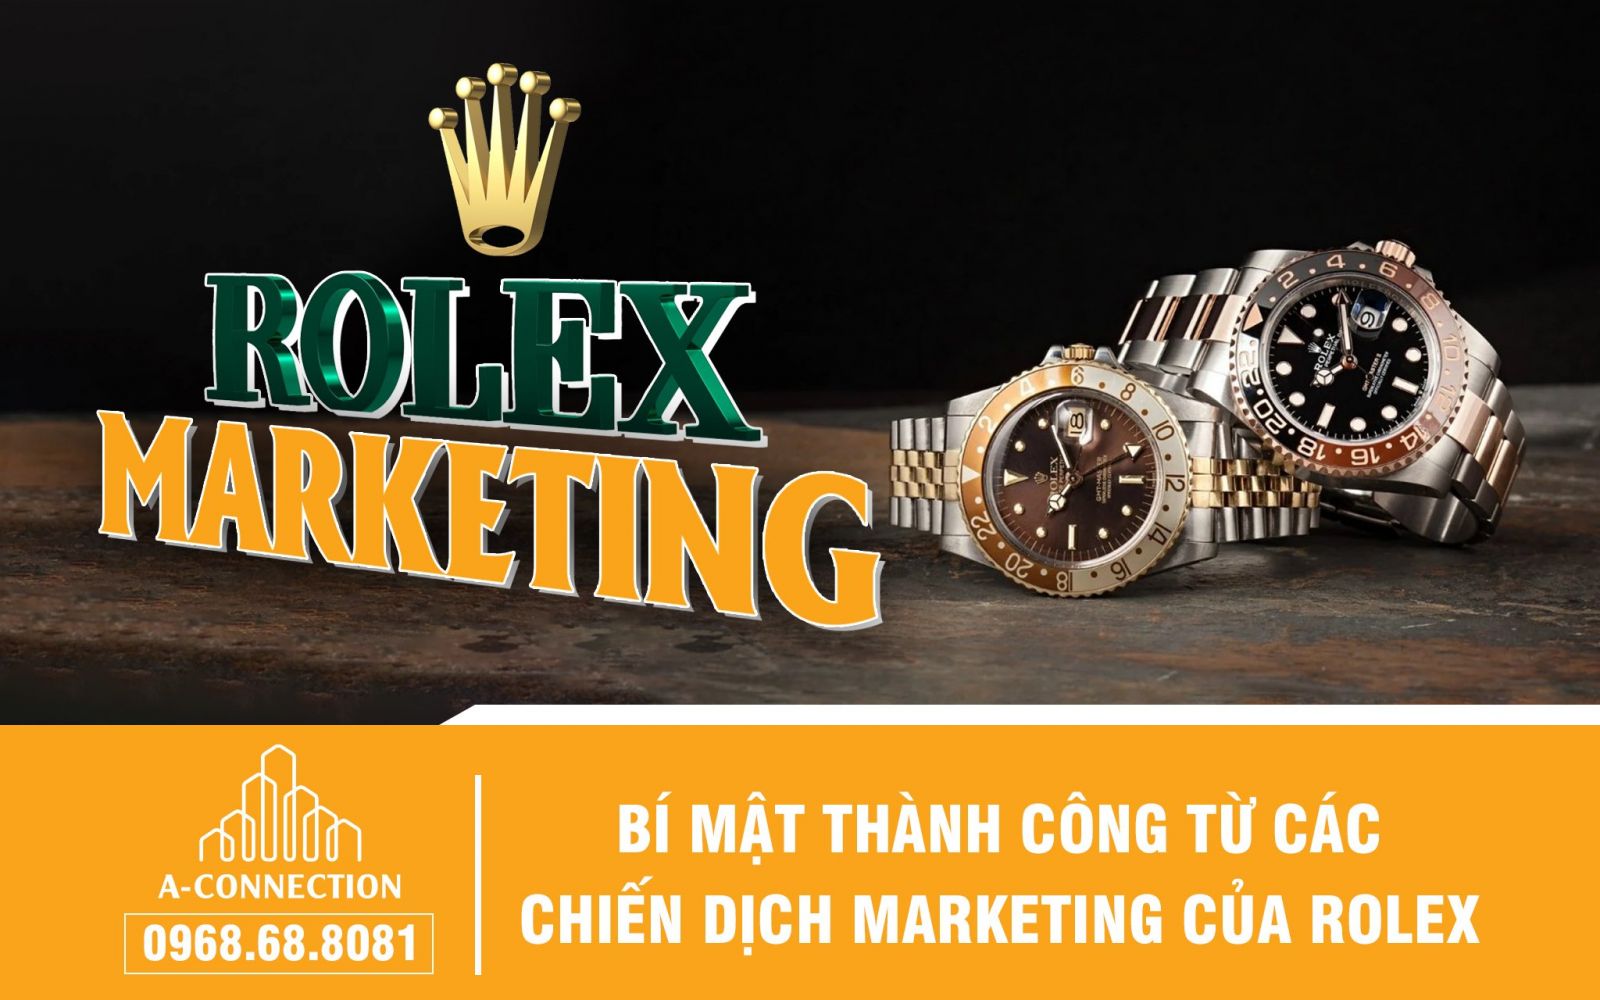 Thành công của chiến dịch marketing của Rolex